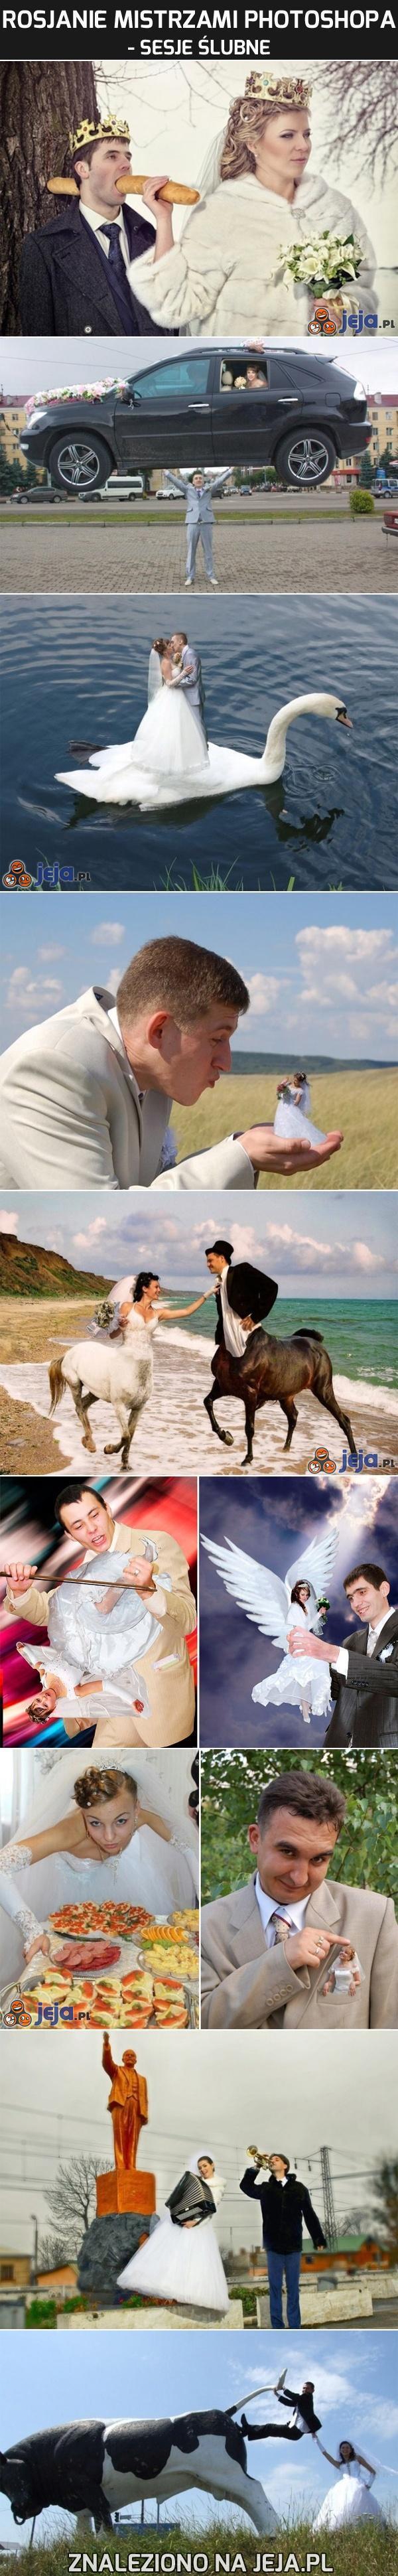 Rosjanie mistrzami Photoshopa - sesje ślubne